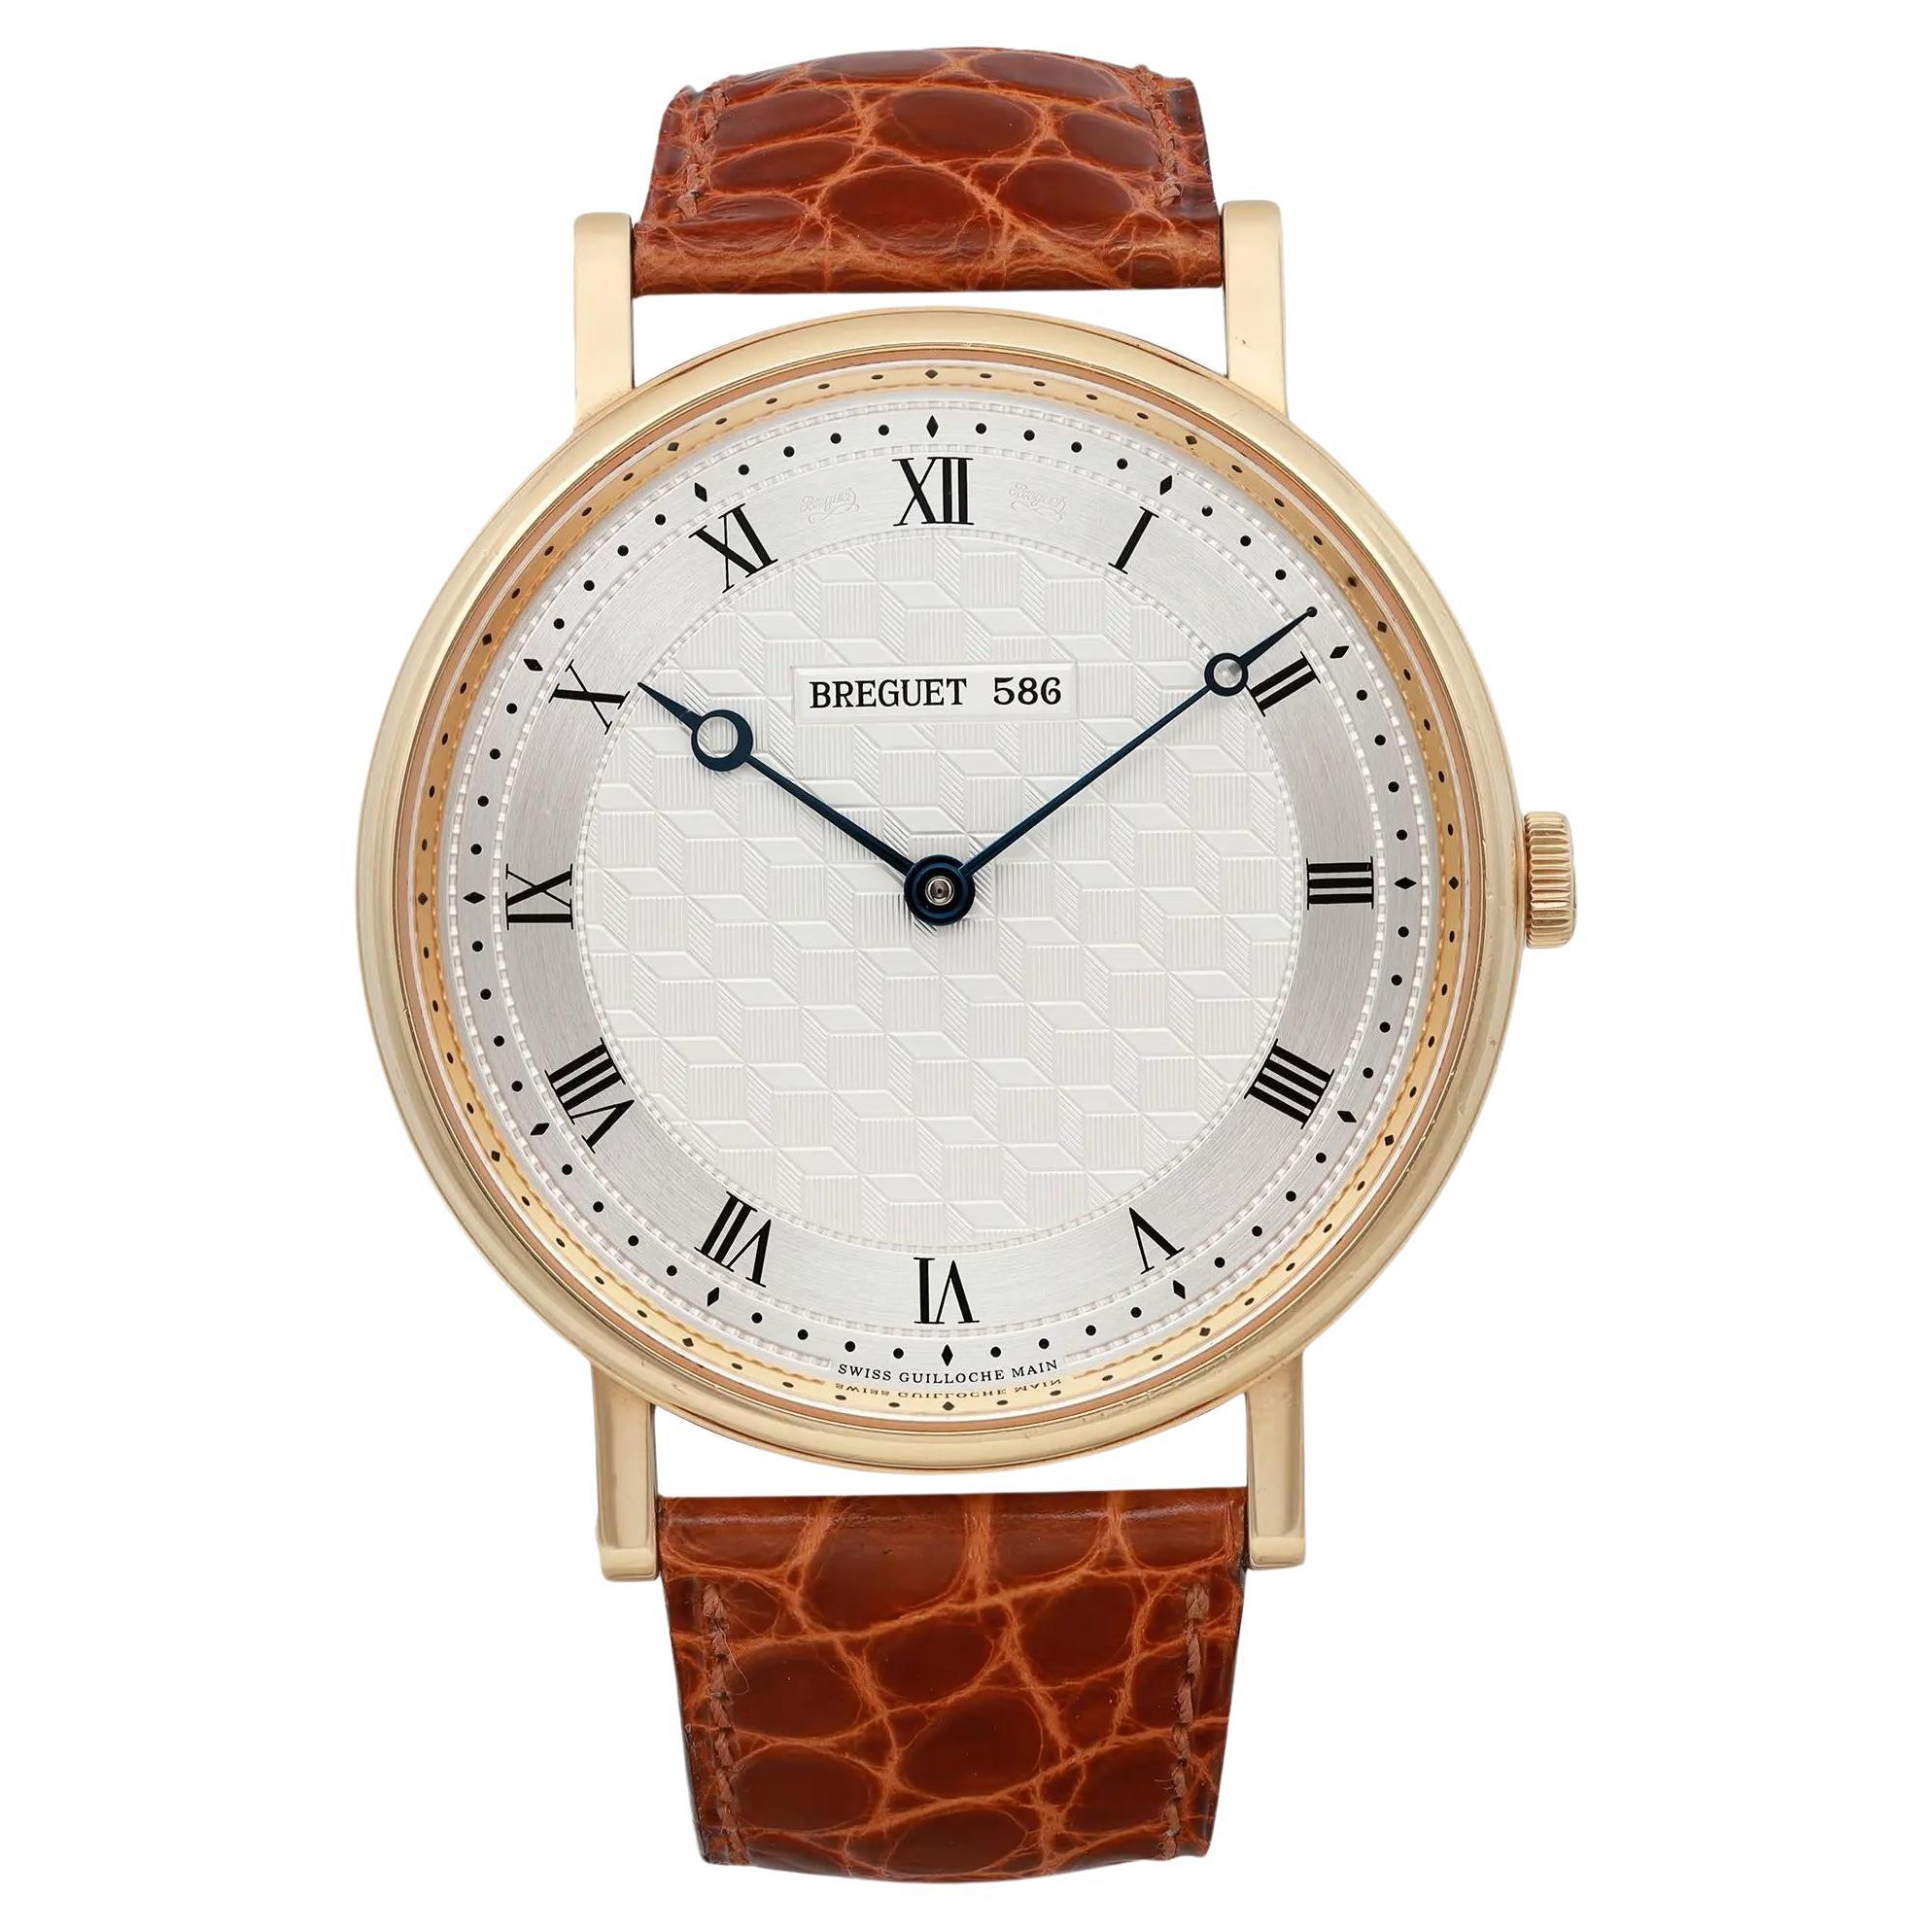 Die Classique-Uhr von Breguet